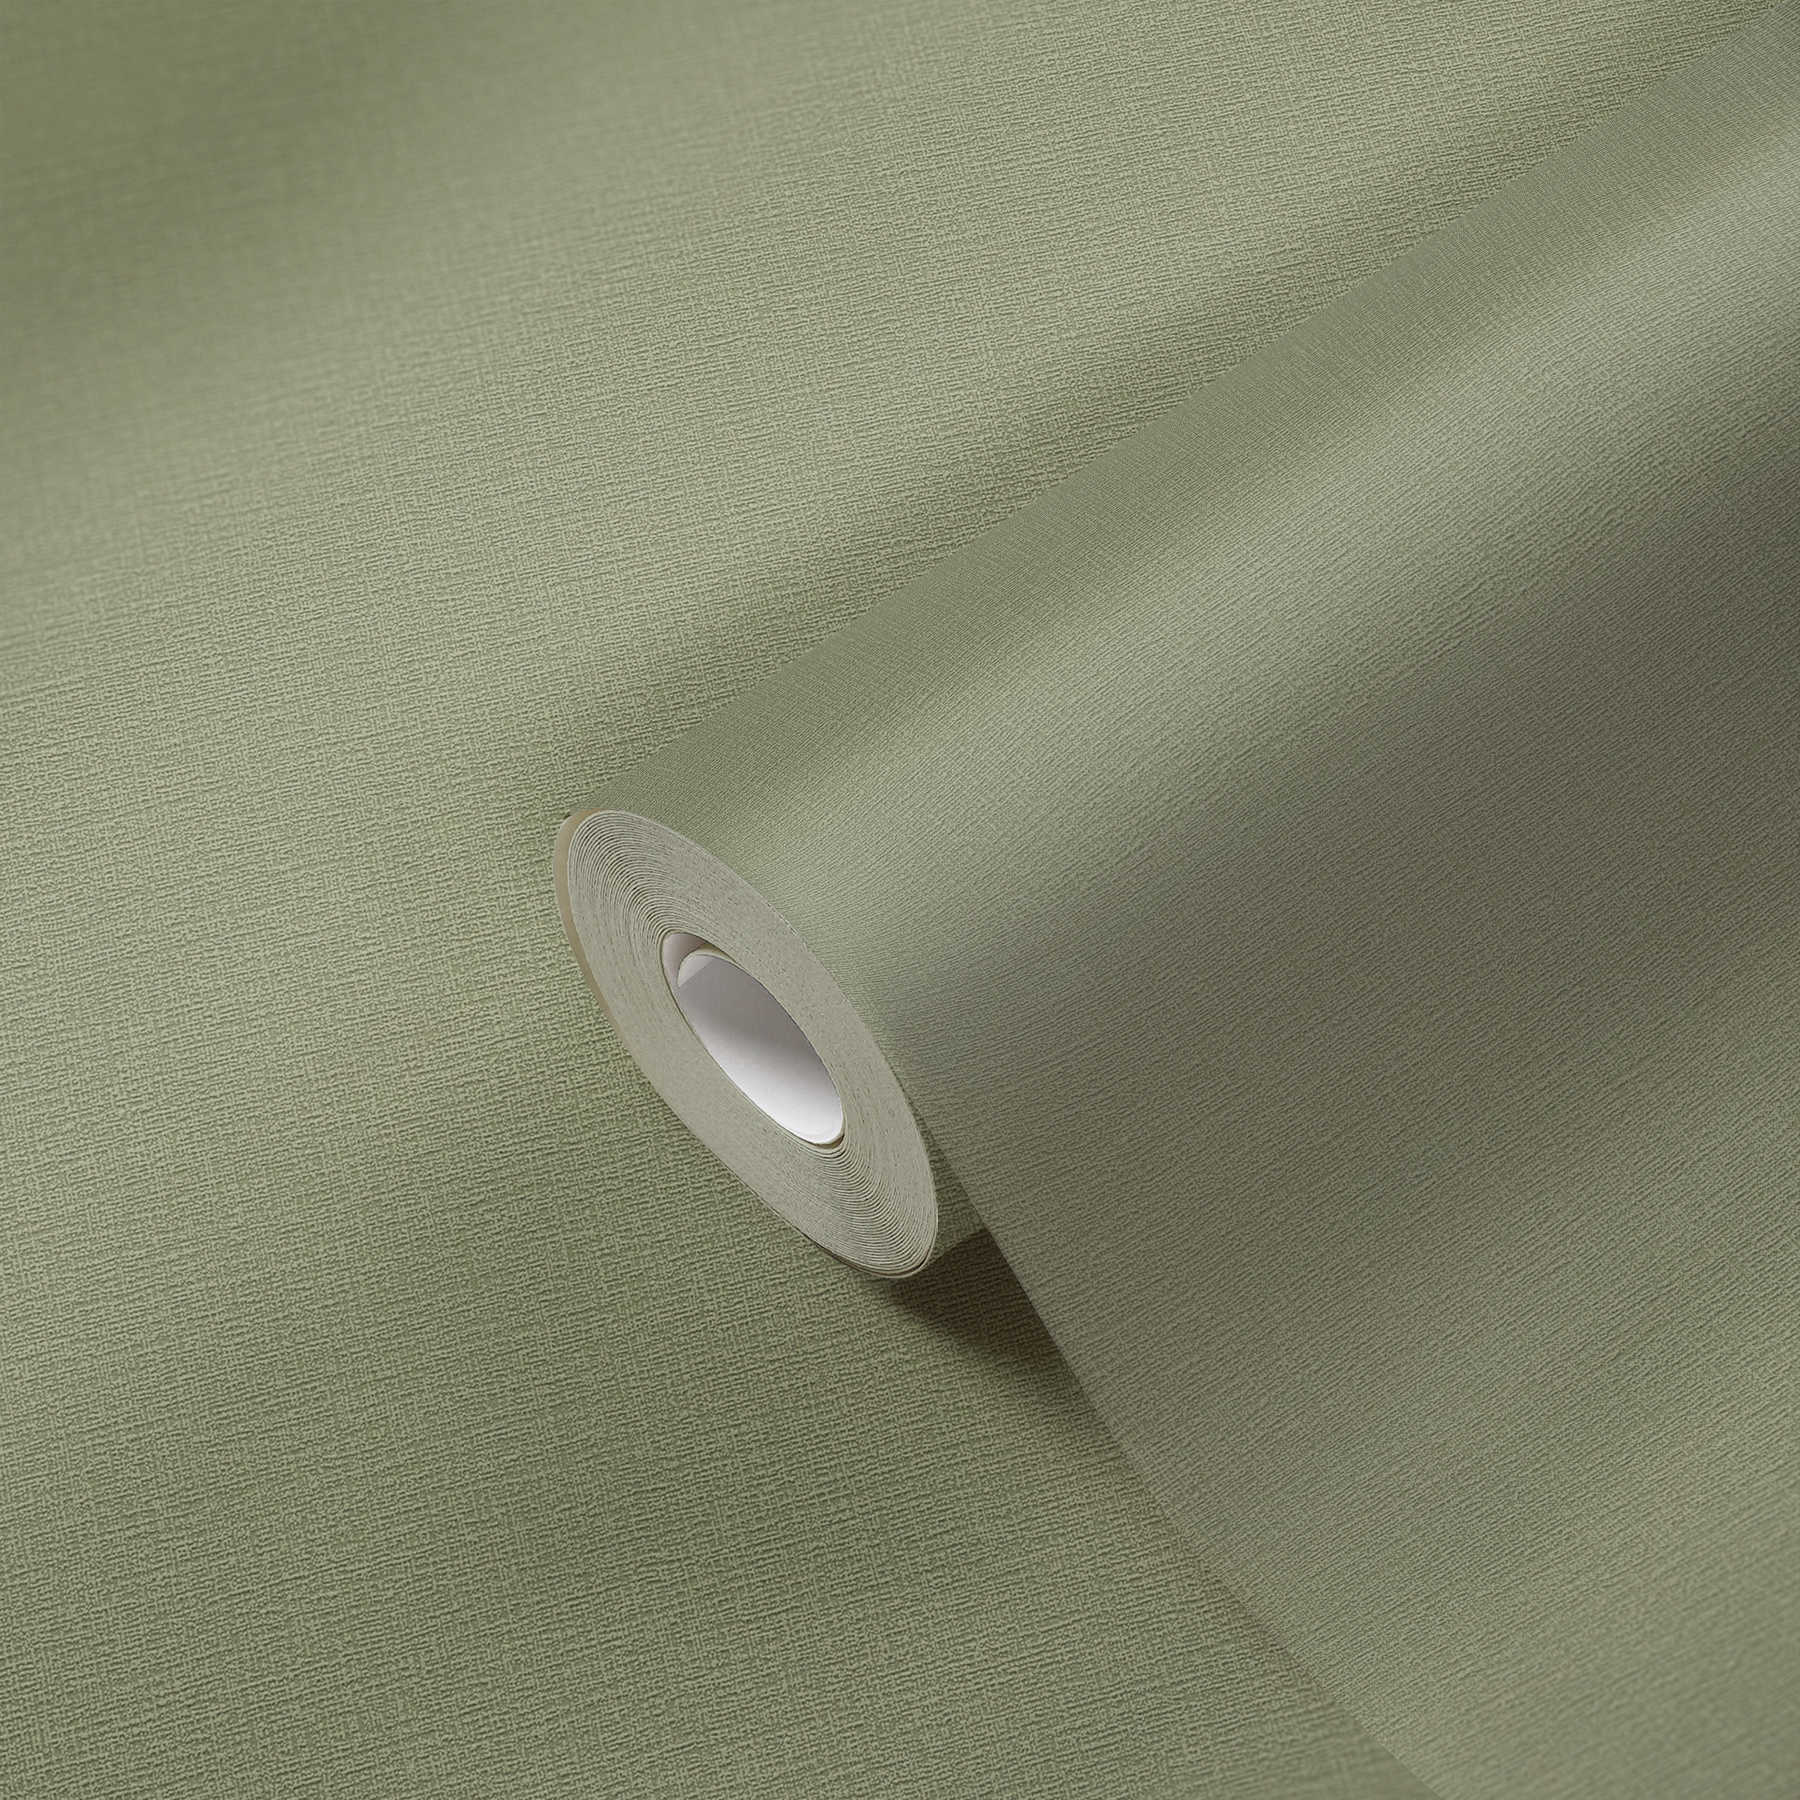             Khaki Behang Eucalyptus Groen met Textuur Patroon
        